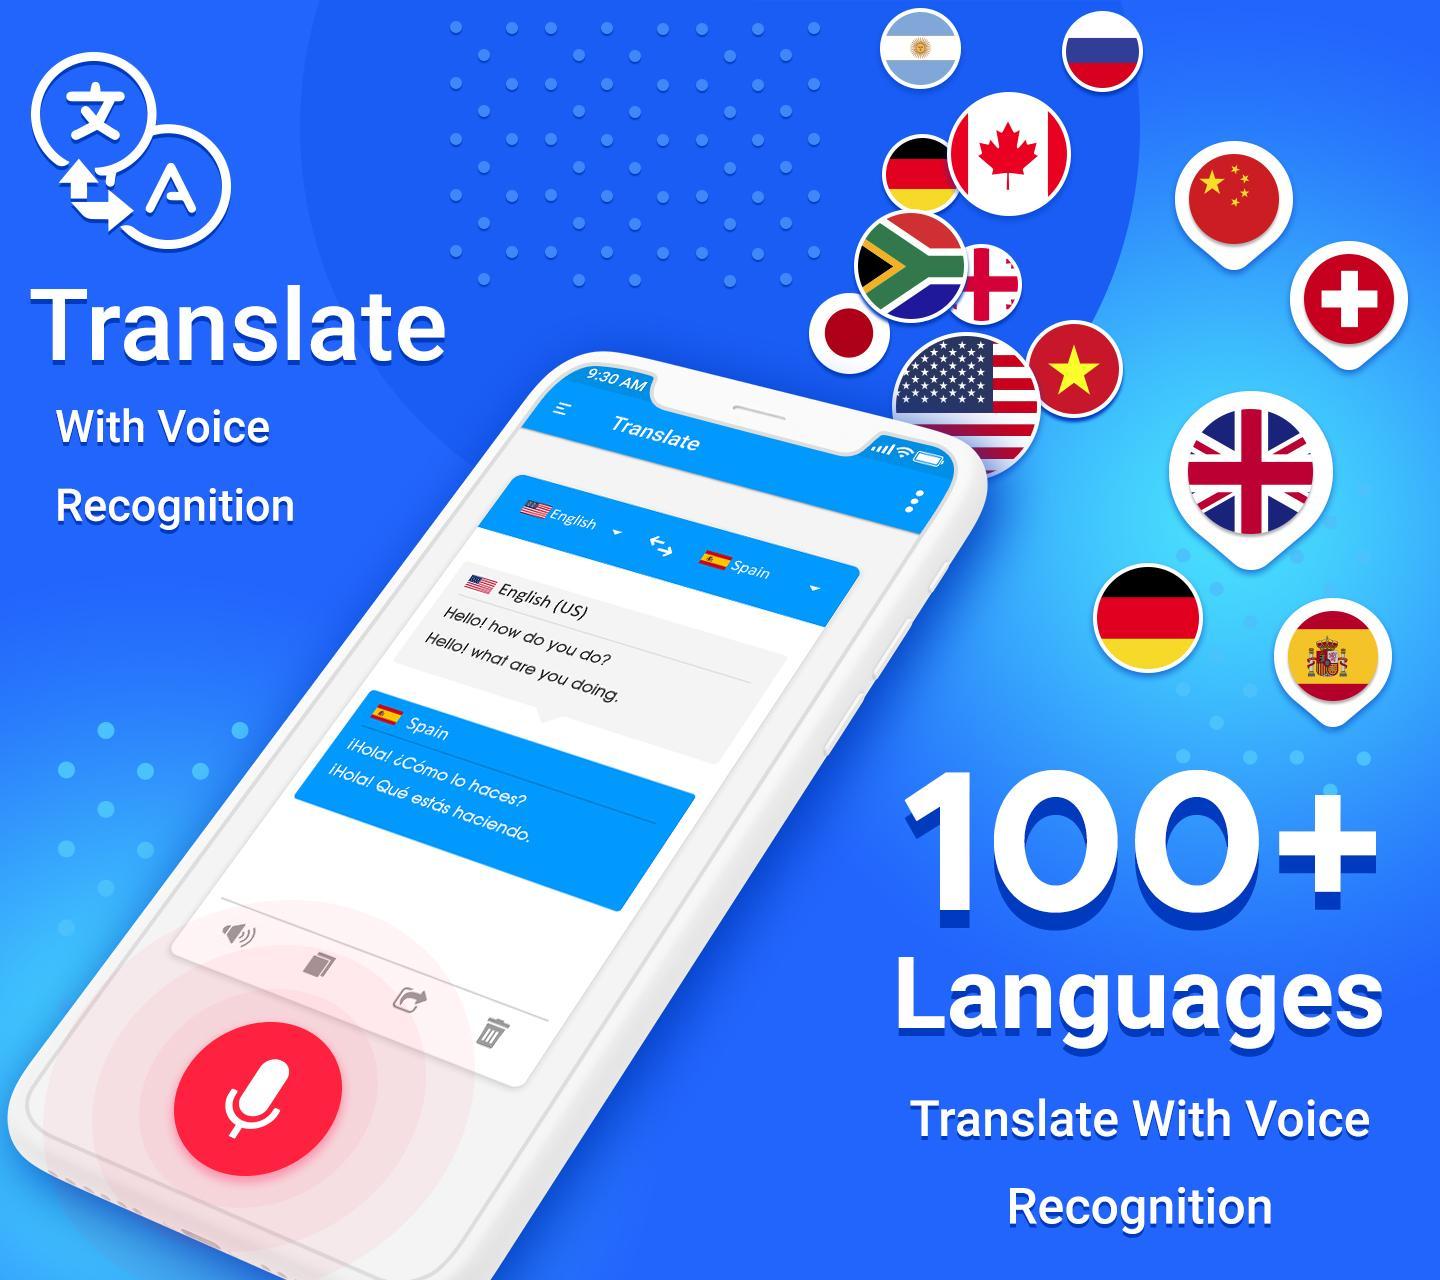 Tłumacz Języka - tłumacz tekstu for Android - APK Download